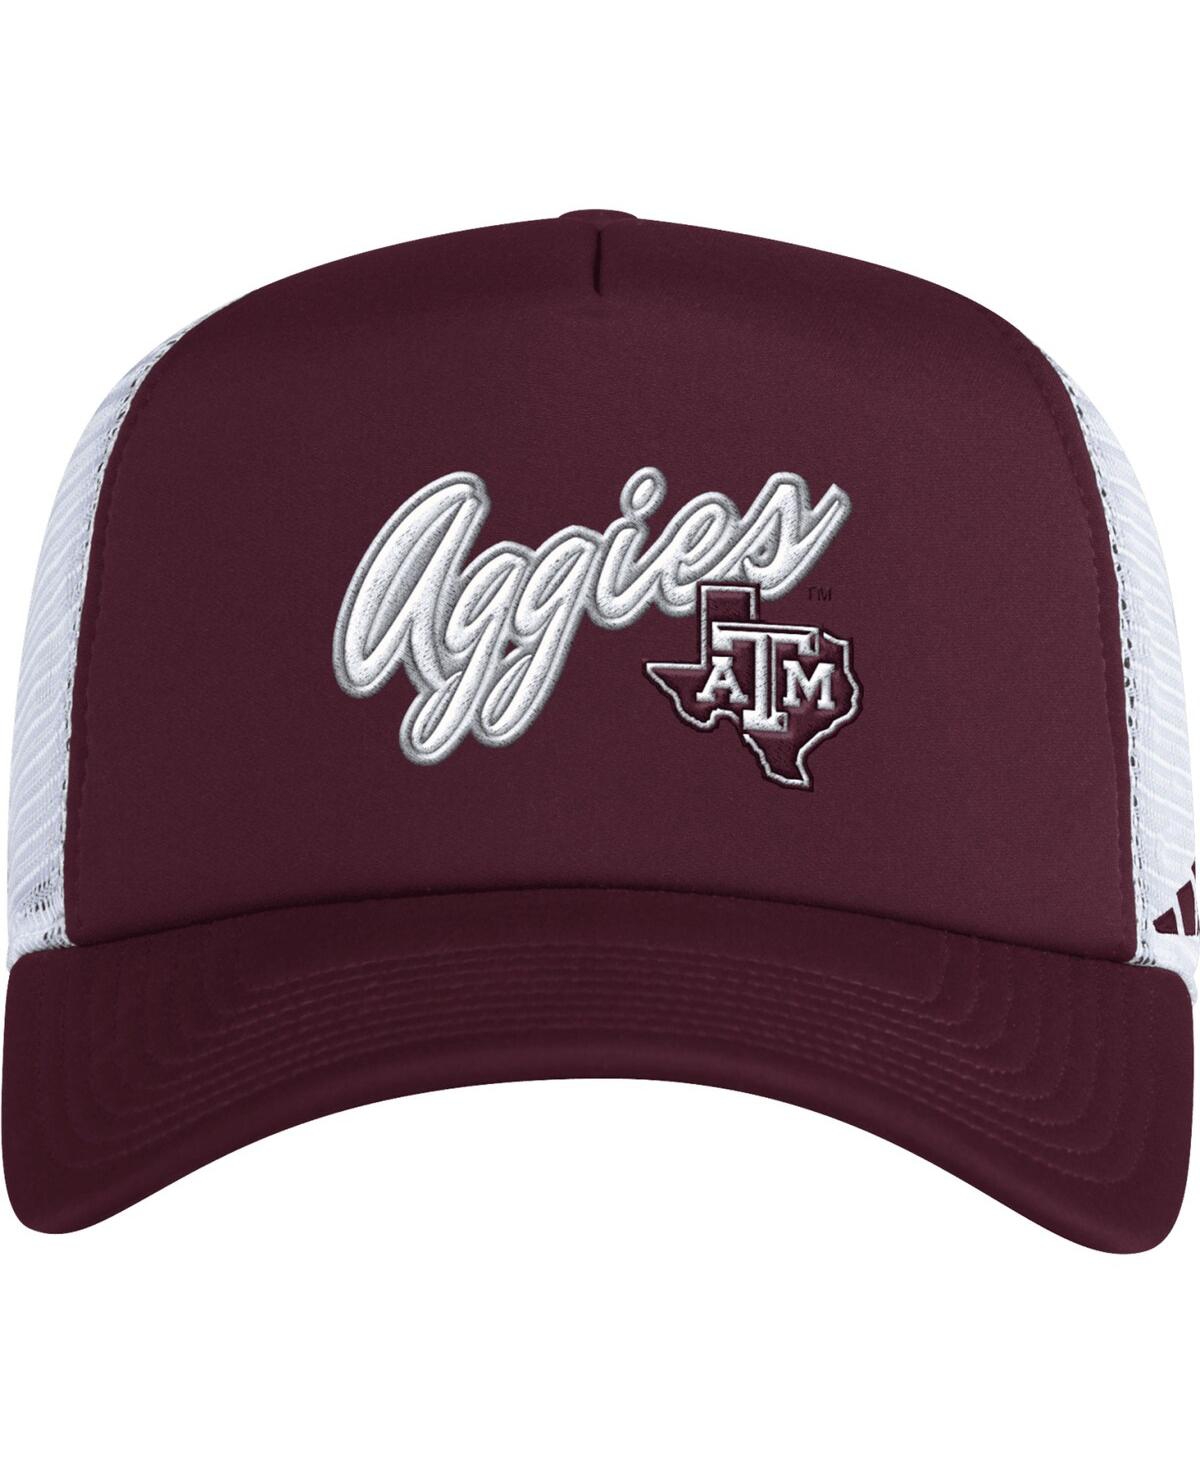 Shop Adidas Originals Men's Adidas Maroon Texas A&m Aggies Script Trucker Snapback Hat